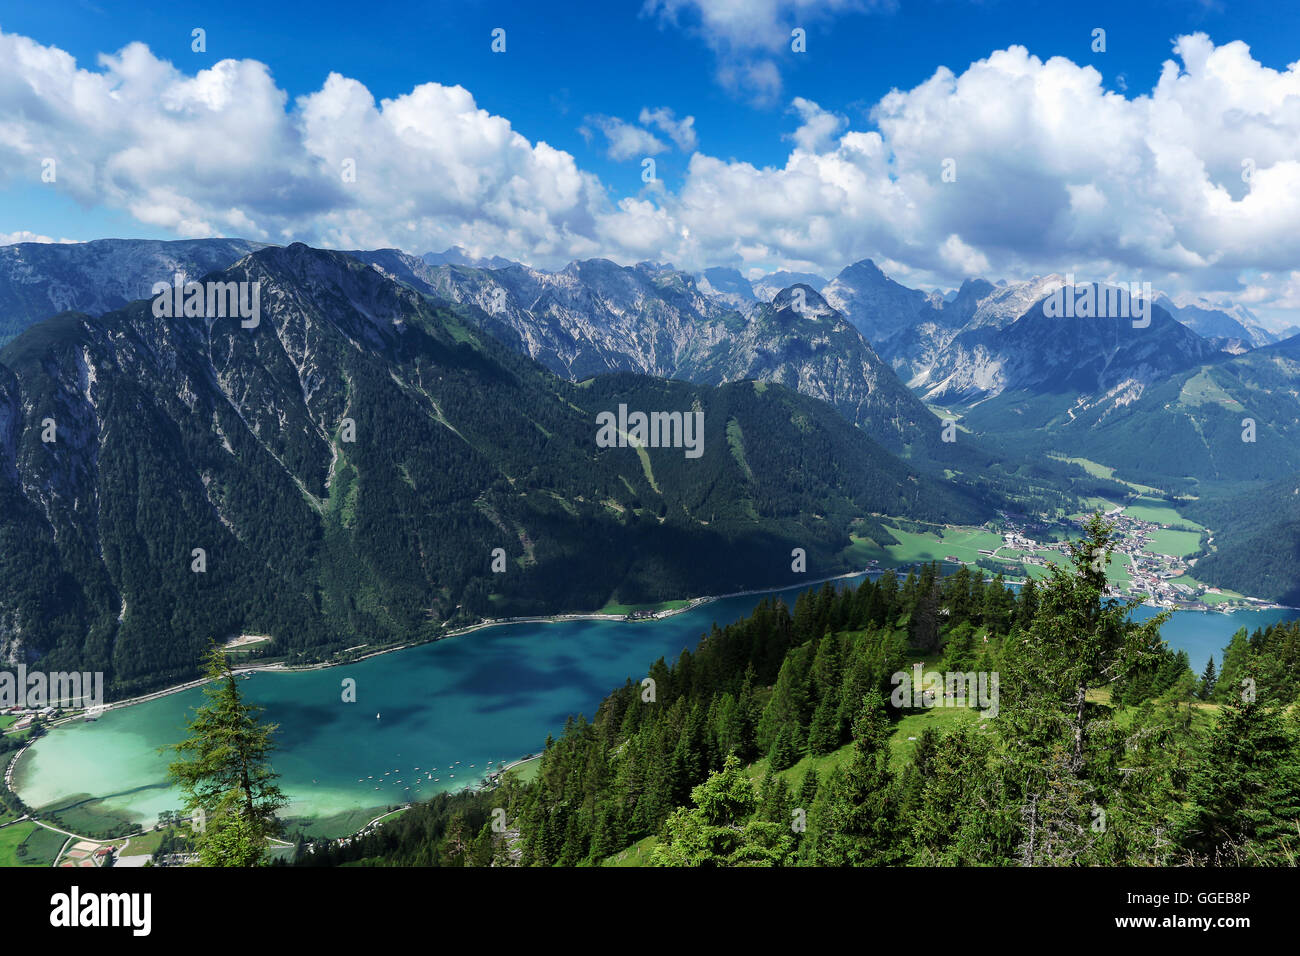 Vista aérea de Blue Mountain Lake entre boscosas montañas rocosas. Achensee, Austria, Tirol Foto de stock